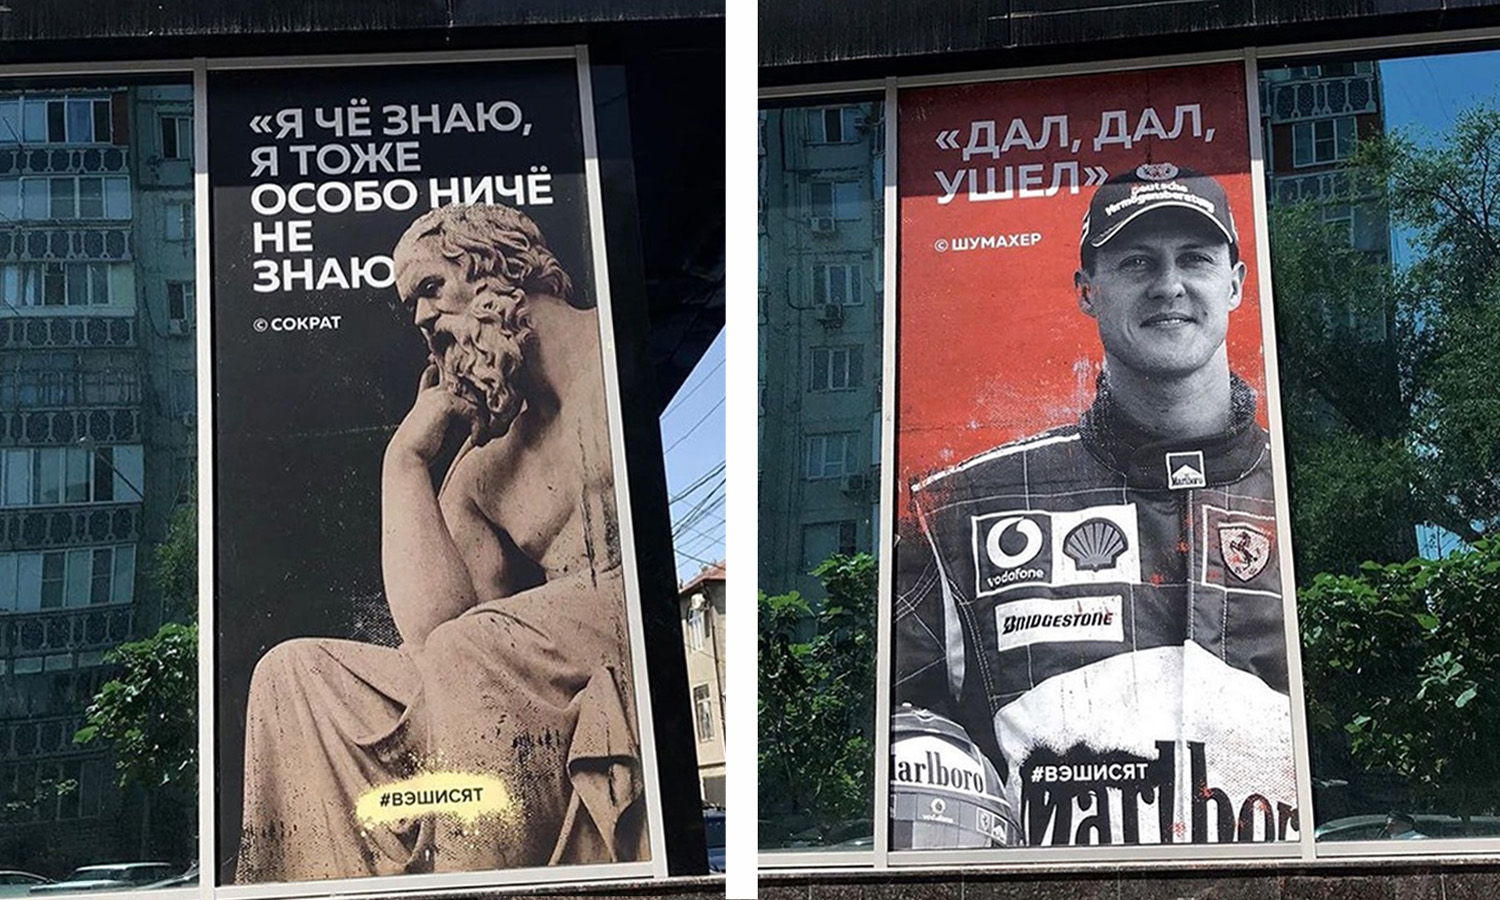 Рекламный баннер в Дагестане